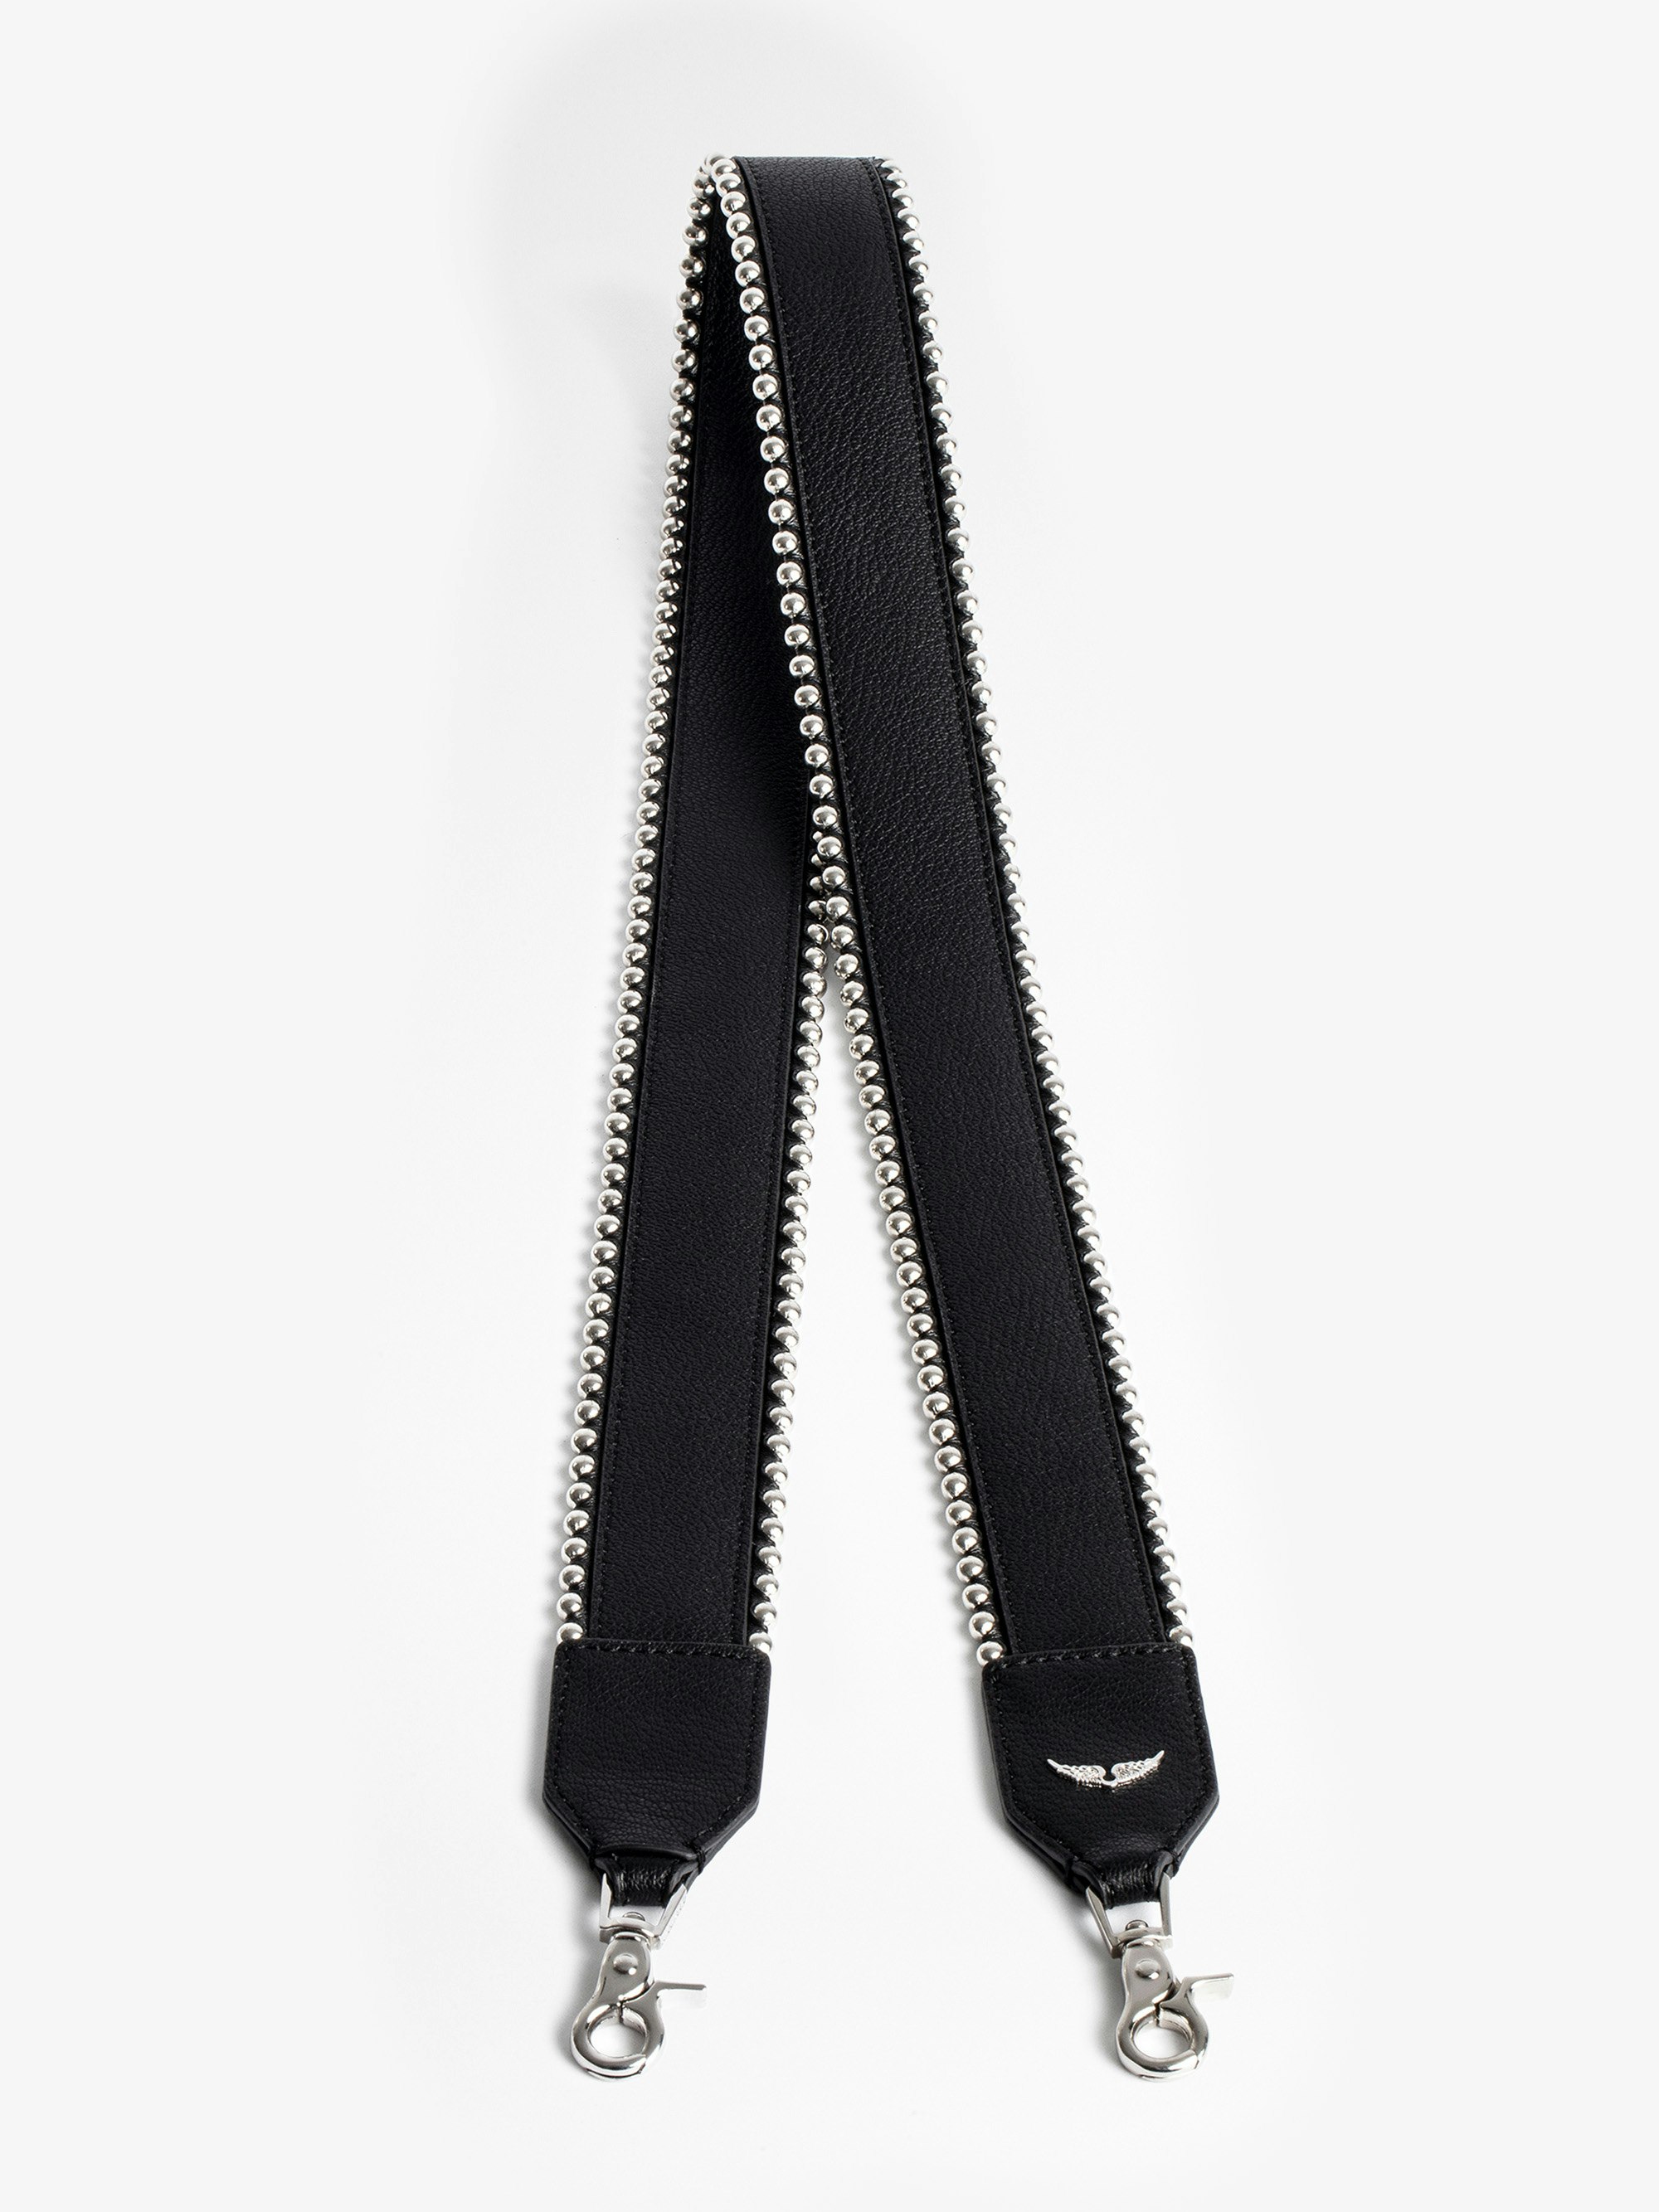 Stud Piping Shoulder Strap - Black leather shoulder strap